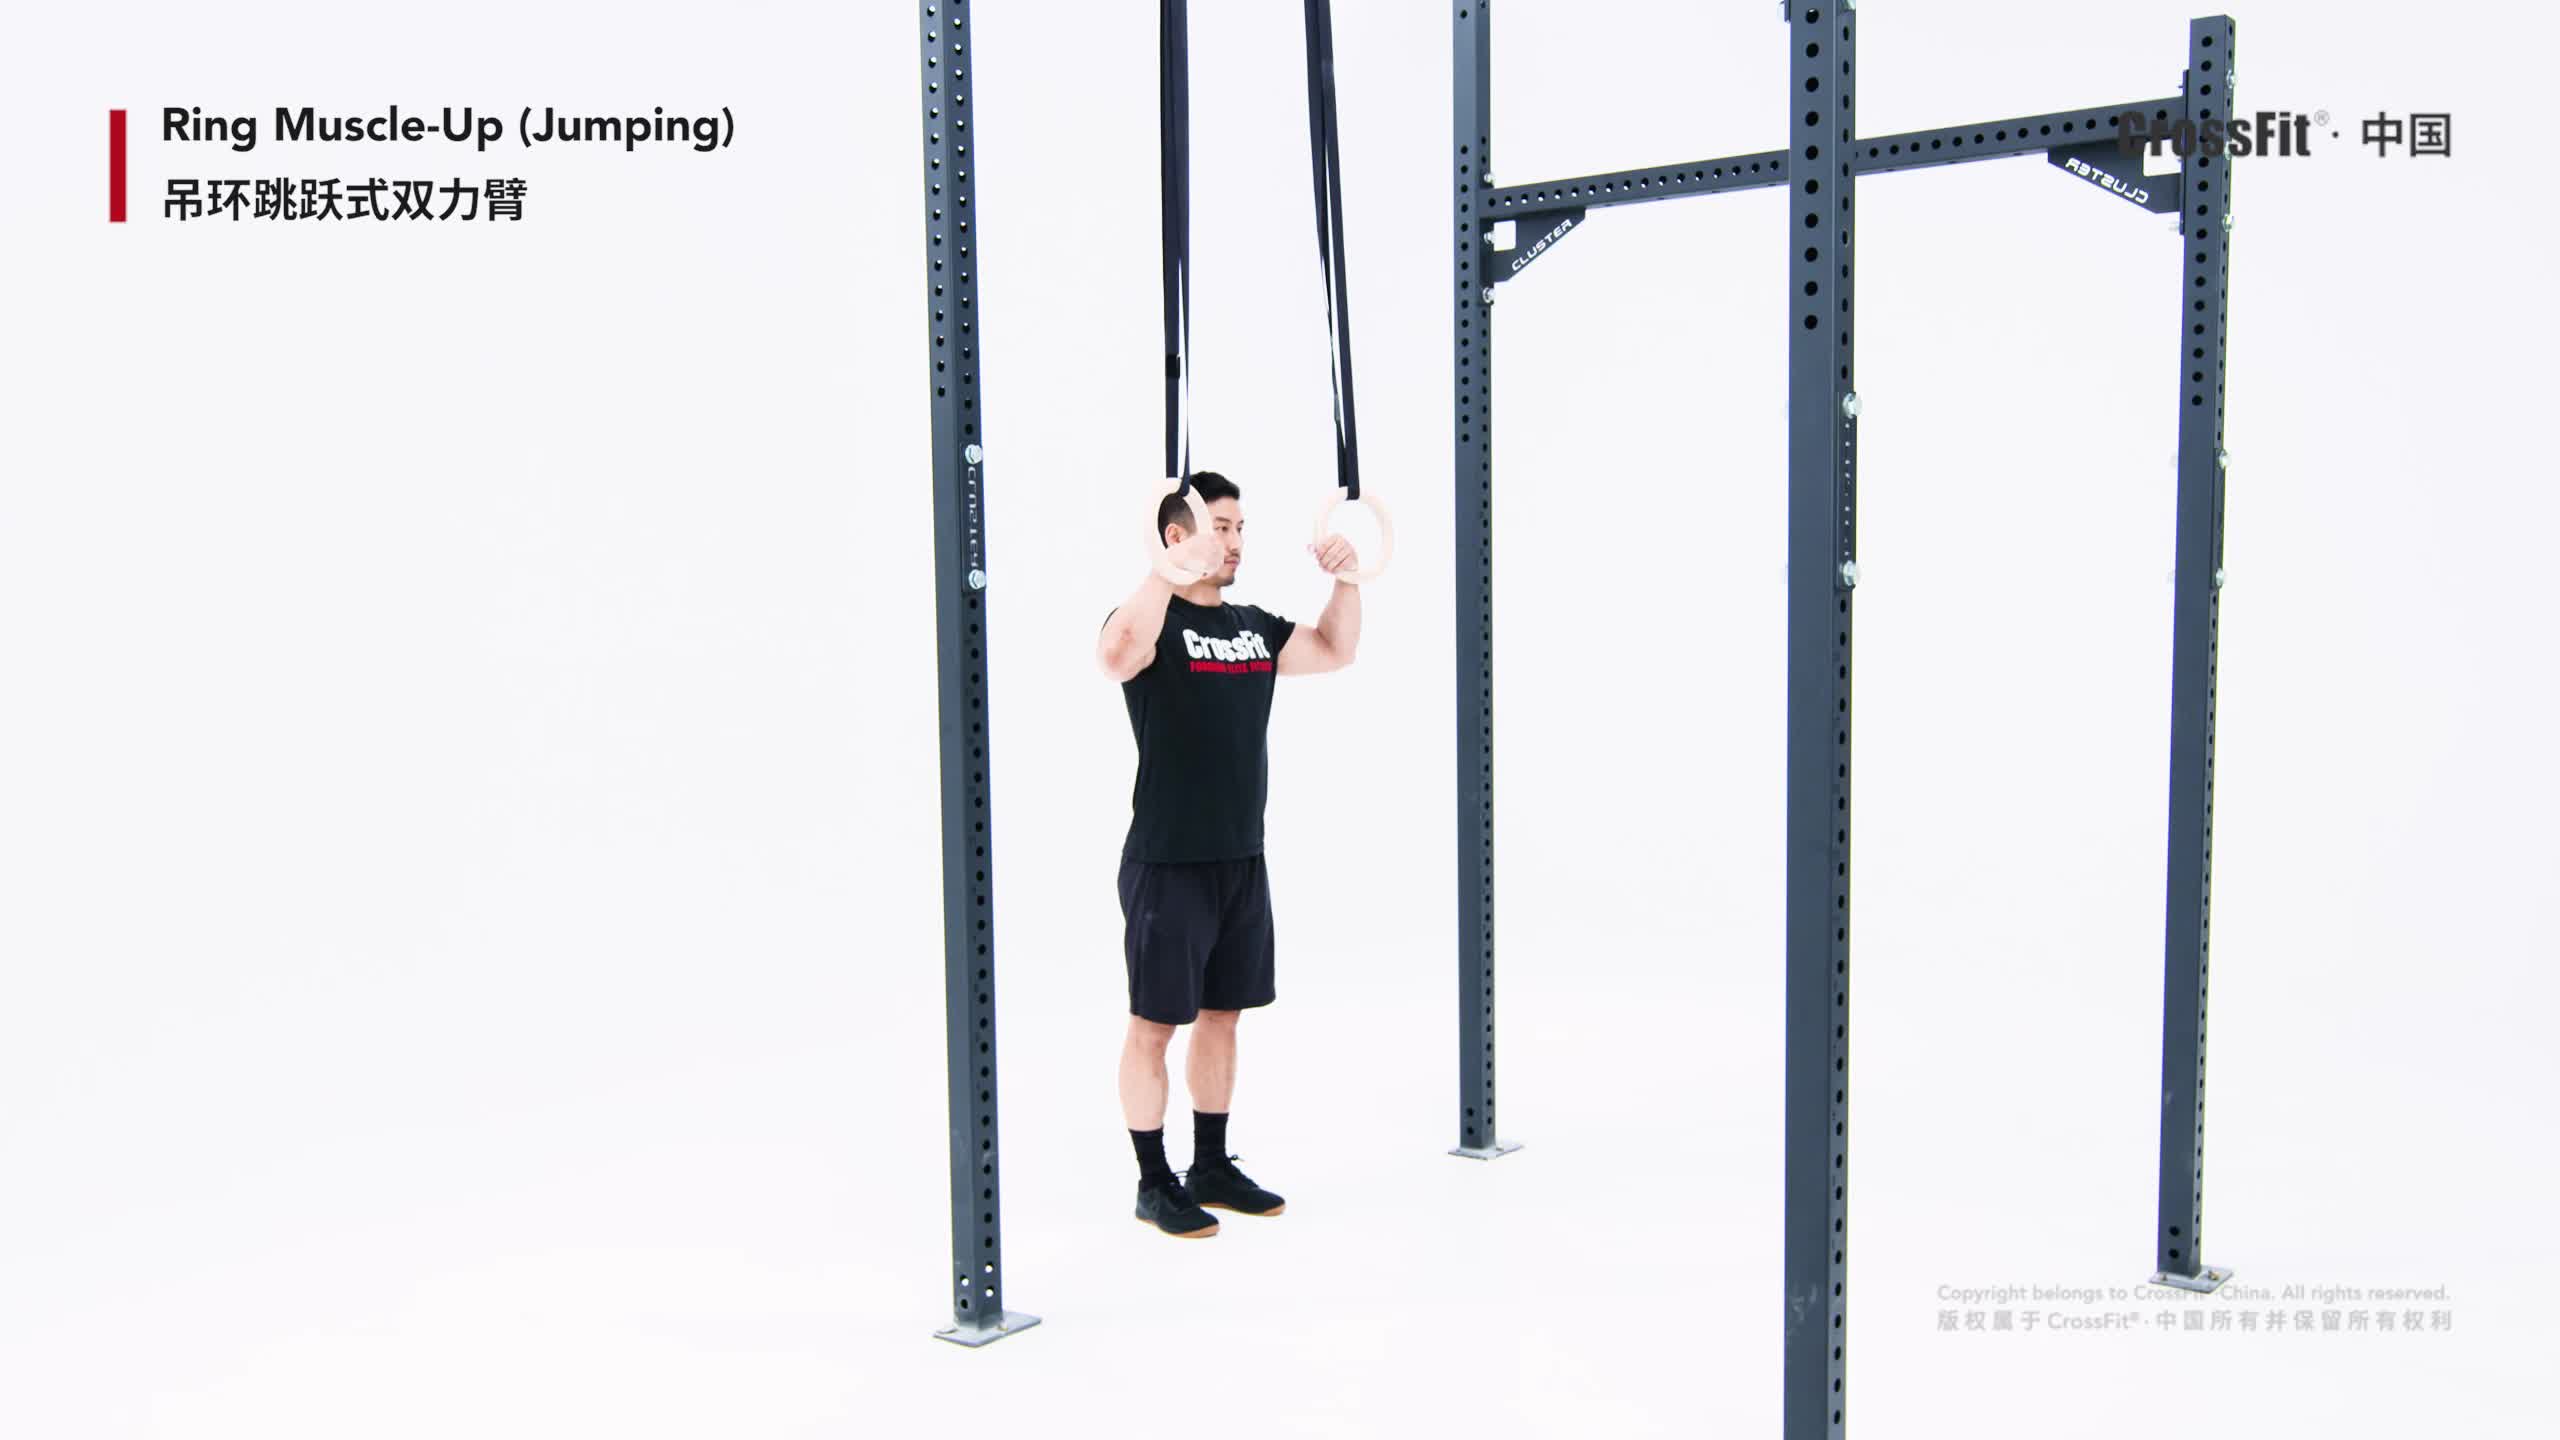 吊环运动员-蓝牛仔影像-中国原创广告影像素材